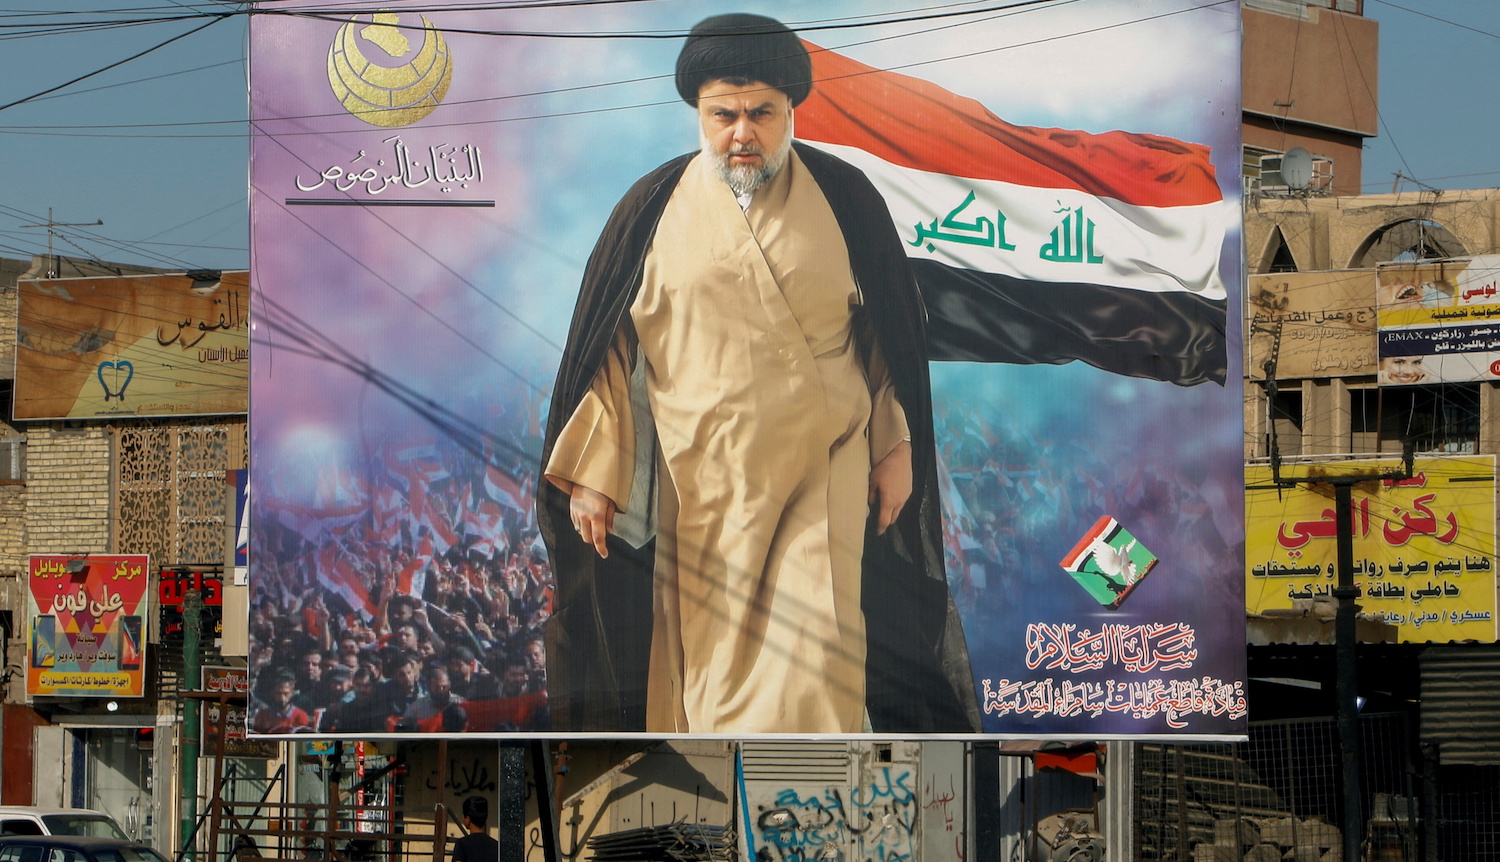 قرر الصدر العراقي الانسحاب من العملية السياسية